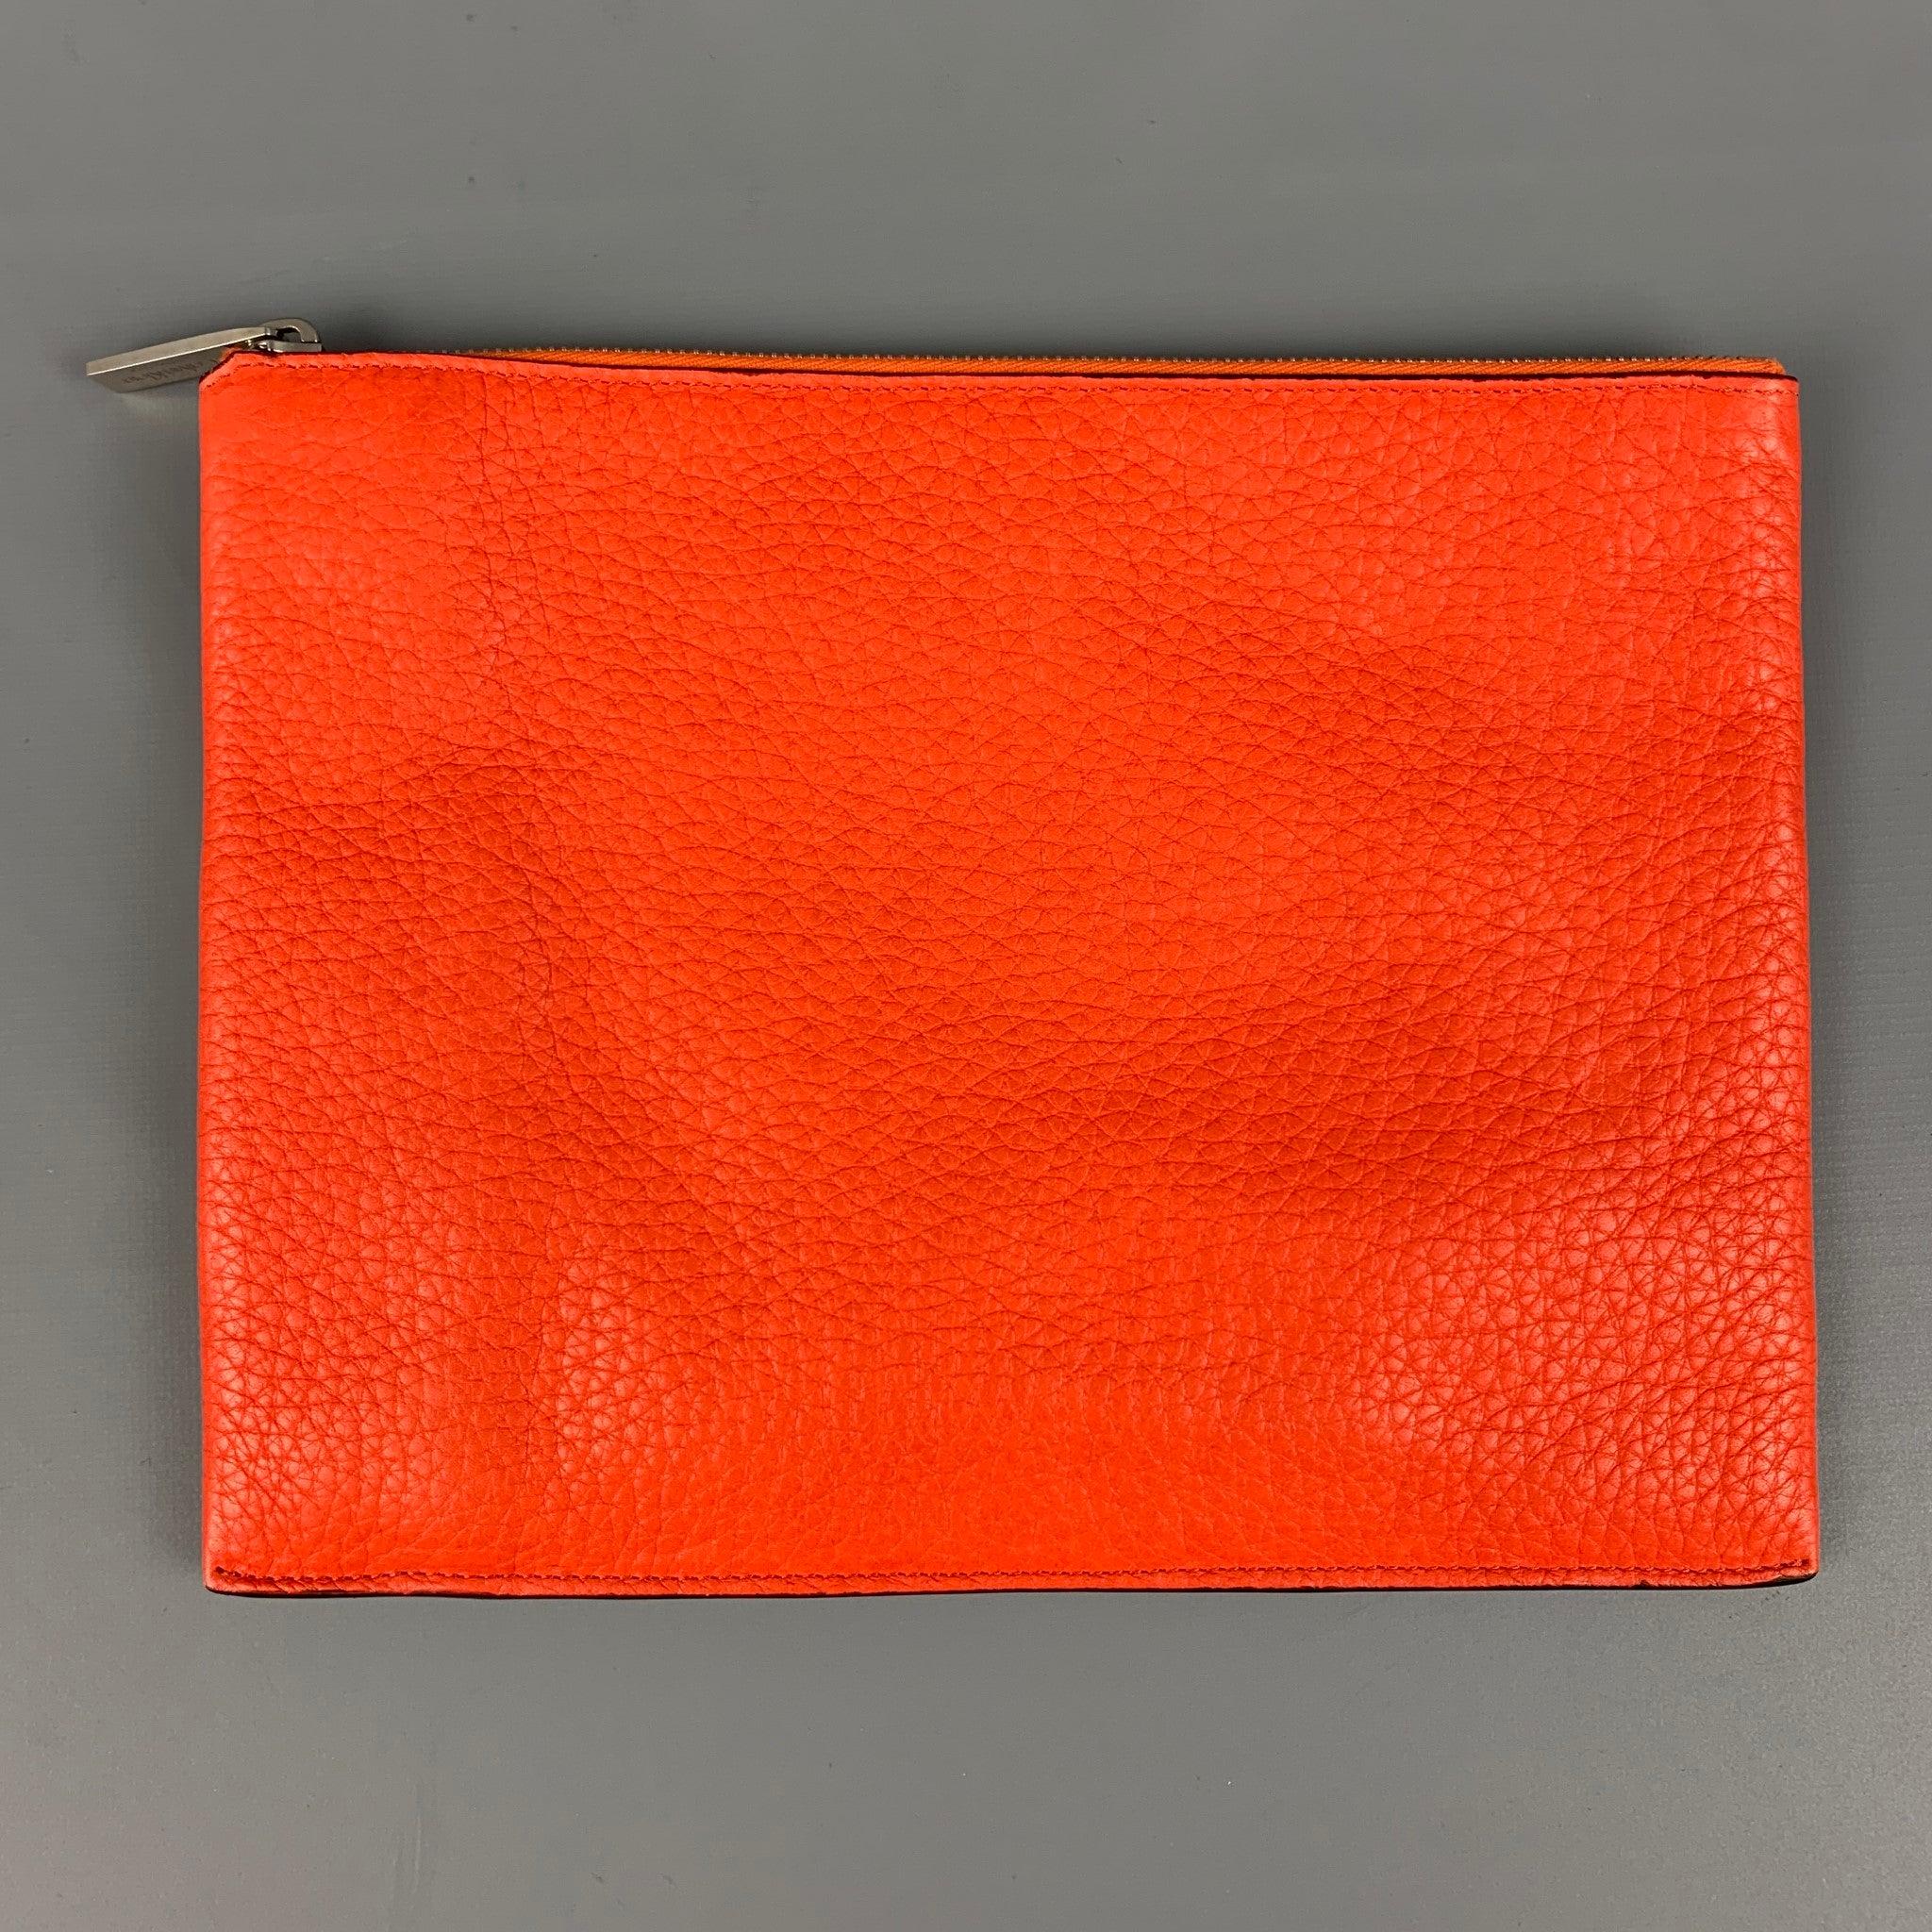 Le sac à main CALVIN KLEIN COLLECTION est en cuir texturé orange et se ferme par un zip sur le dessus. Fabriquées en Italie.
Très bien
Etat d'occasion. 

Mesures : 
  Longueur : 10,5 pouces  Hauteur :
8 pouces 
  
  
 
Référence : 118712
Catégorie :